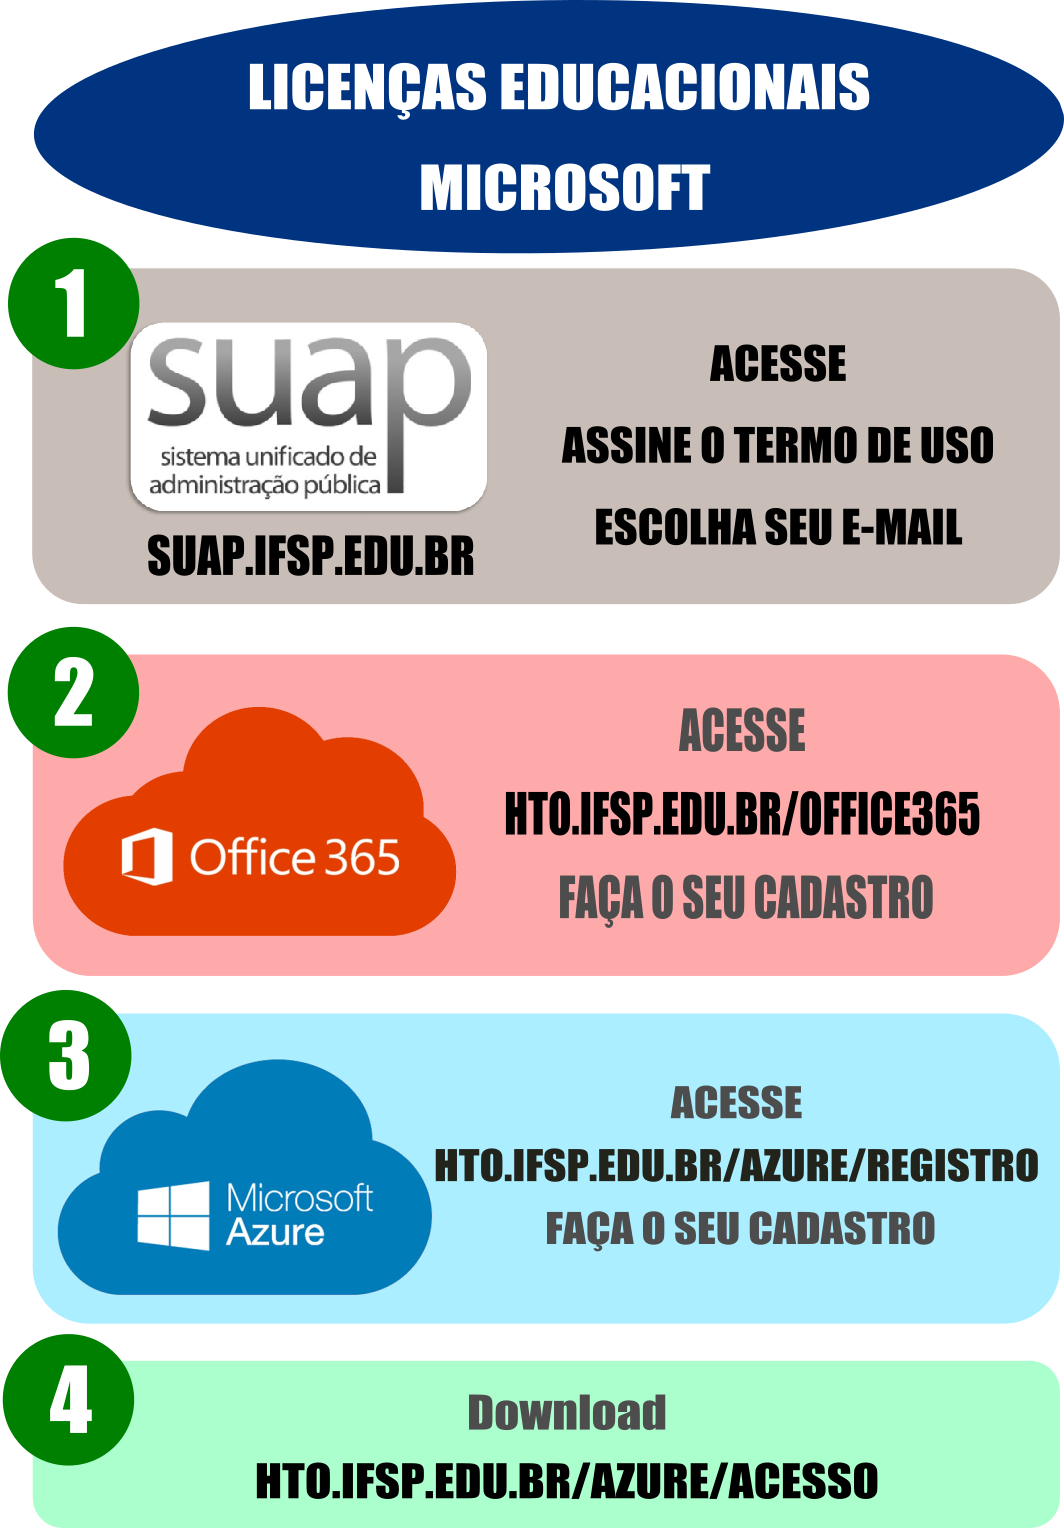 1 - Crie seu email no SUAP 2 - Acesse hto.ifsp.edu.br/office365 e faça seu cadastro